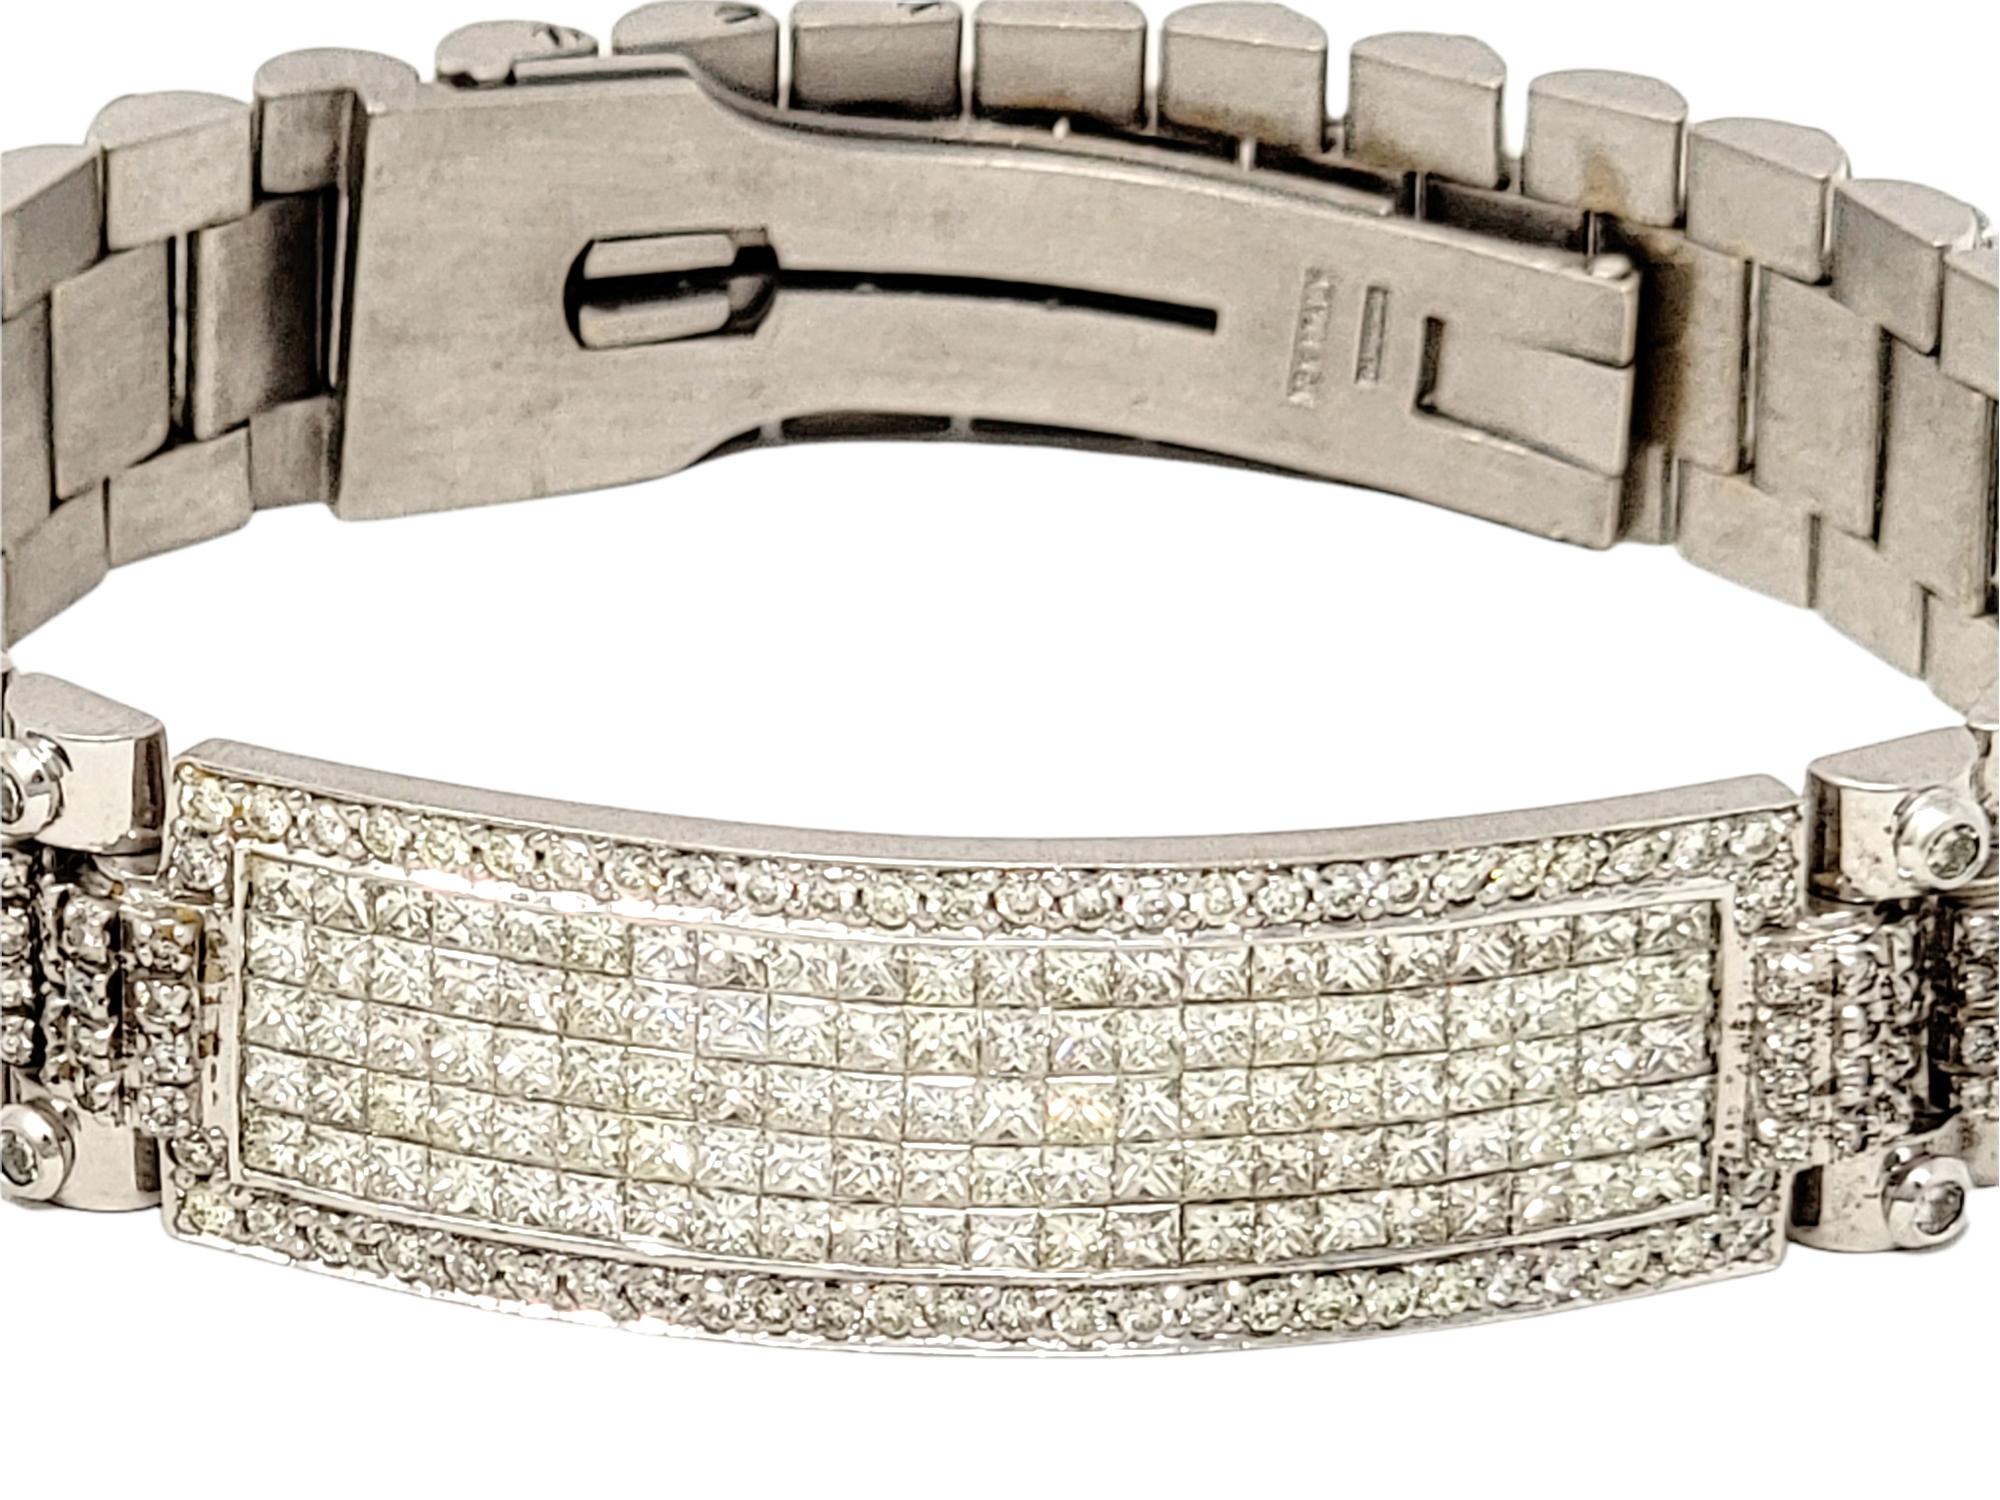 Ce saisissant bracelet-montre à maillons en diamant et or blanc 18 carats pour homme est une déclaration audacieuse et extravagante. Le design contemporain de cette magnifique pièce est très élégant au poignet, attirant l'attention du spectateur sur